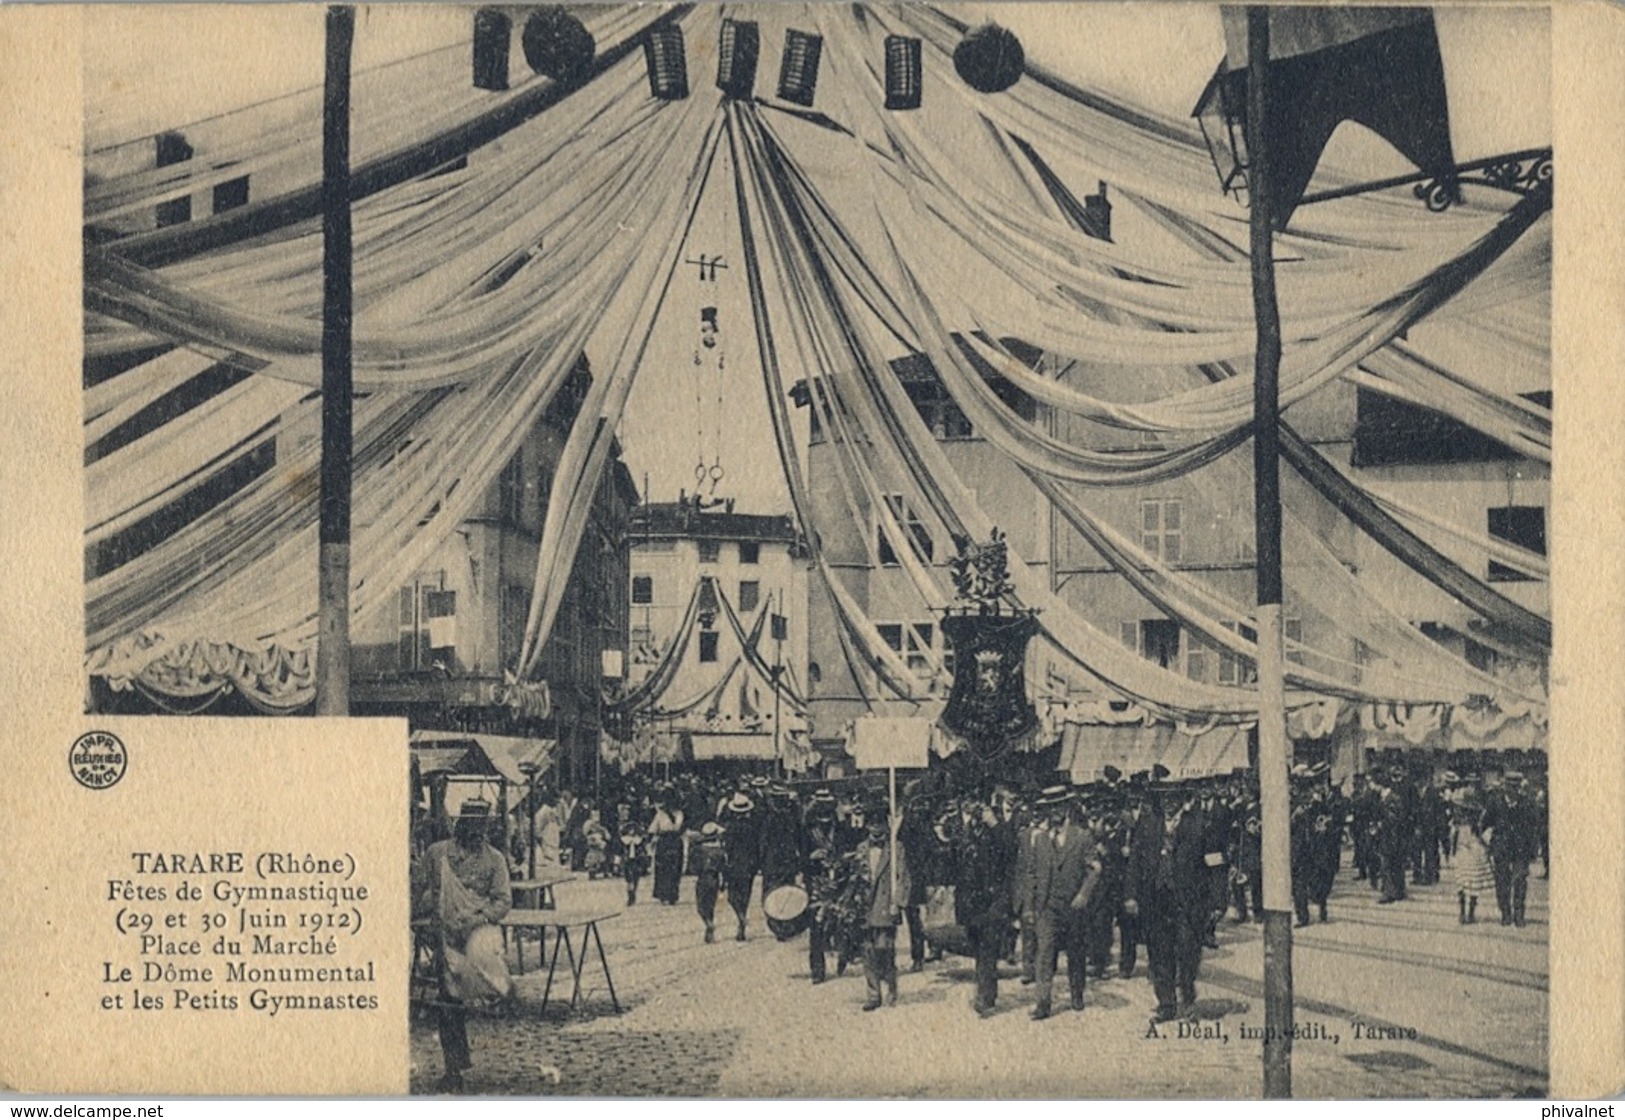 1912 FRANCIA - TARARE , T.P. SIN CIRCULAR ,  FÉTES DE GYMNASTIQUE , GIMNASIA , PLACE DU MARCHÉ - Gymnastique